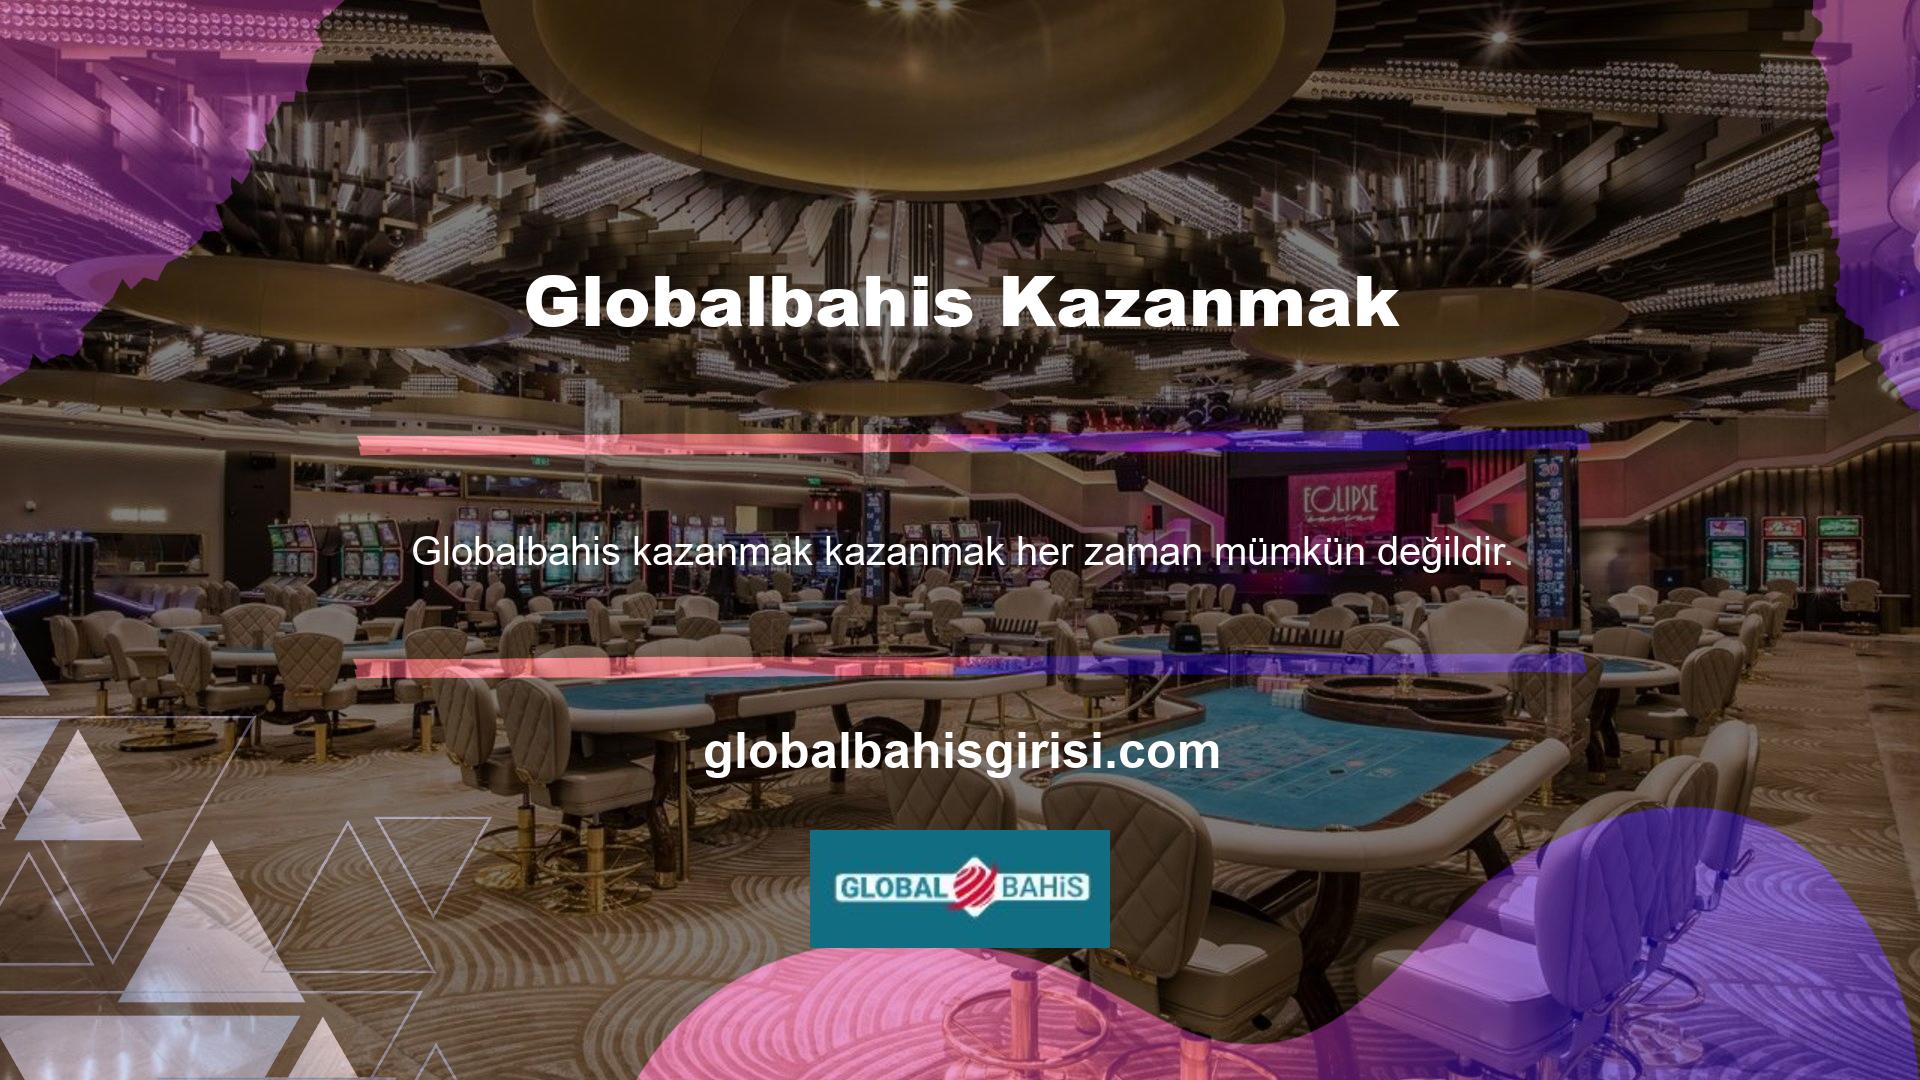 Popüler Globalbahis casino sitesinin oyunculara kaybettiklerinde bonuslar sunmasının nedeni budur